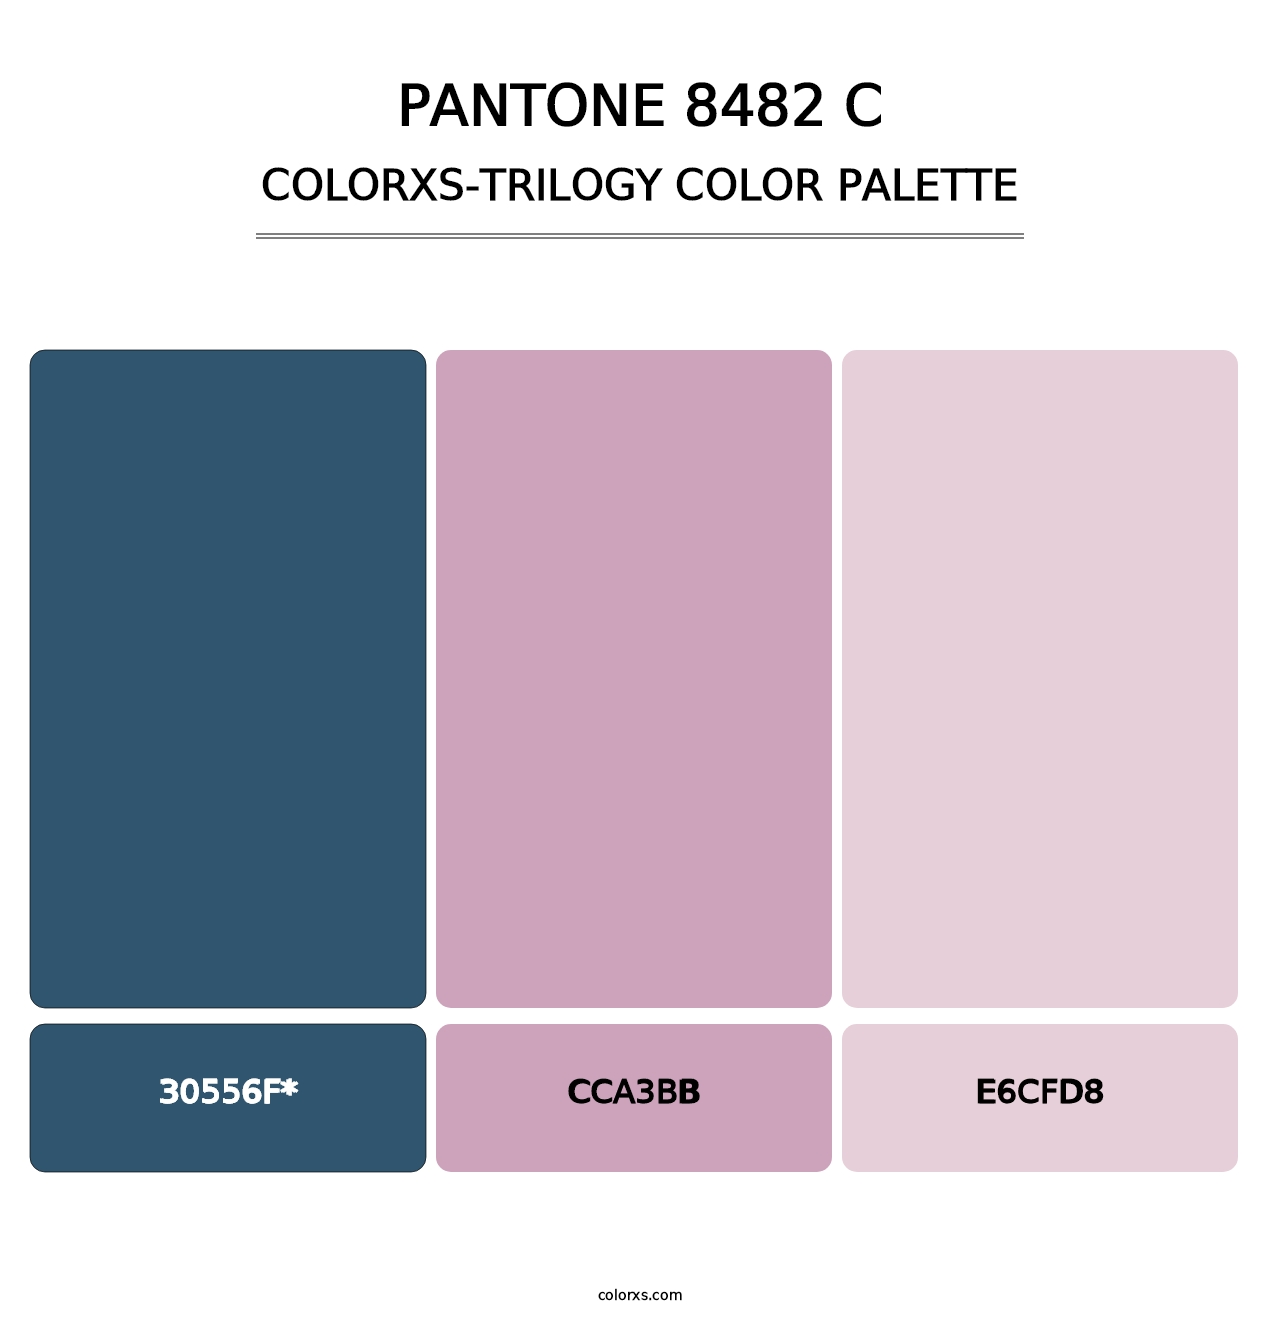 PANTONE 8482 C - Colorxs Trilogy Palette